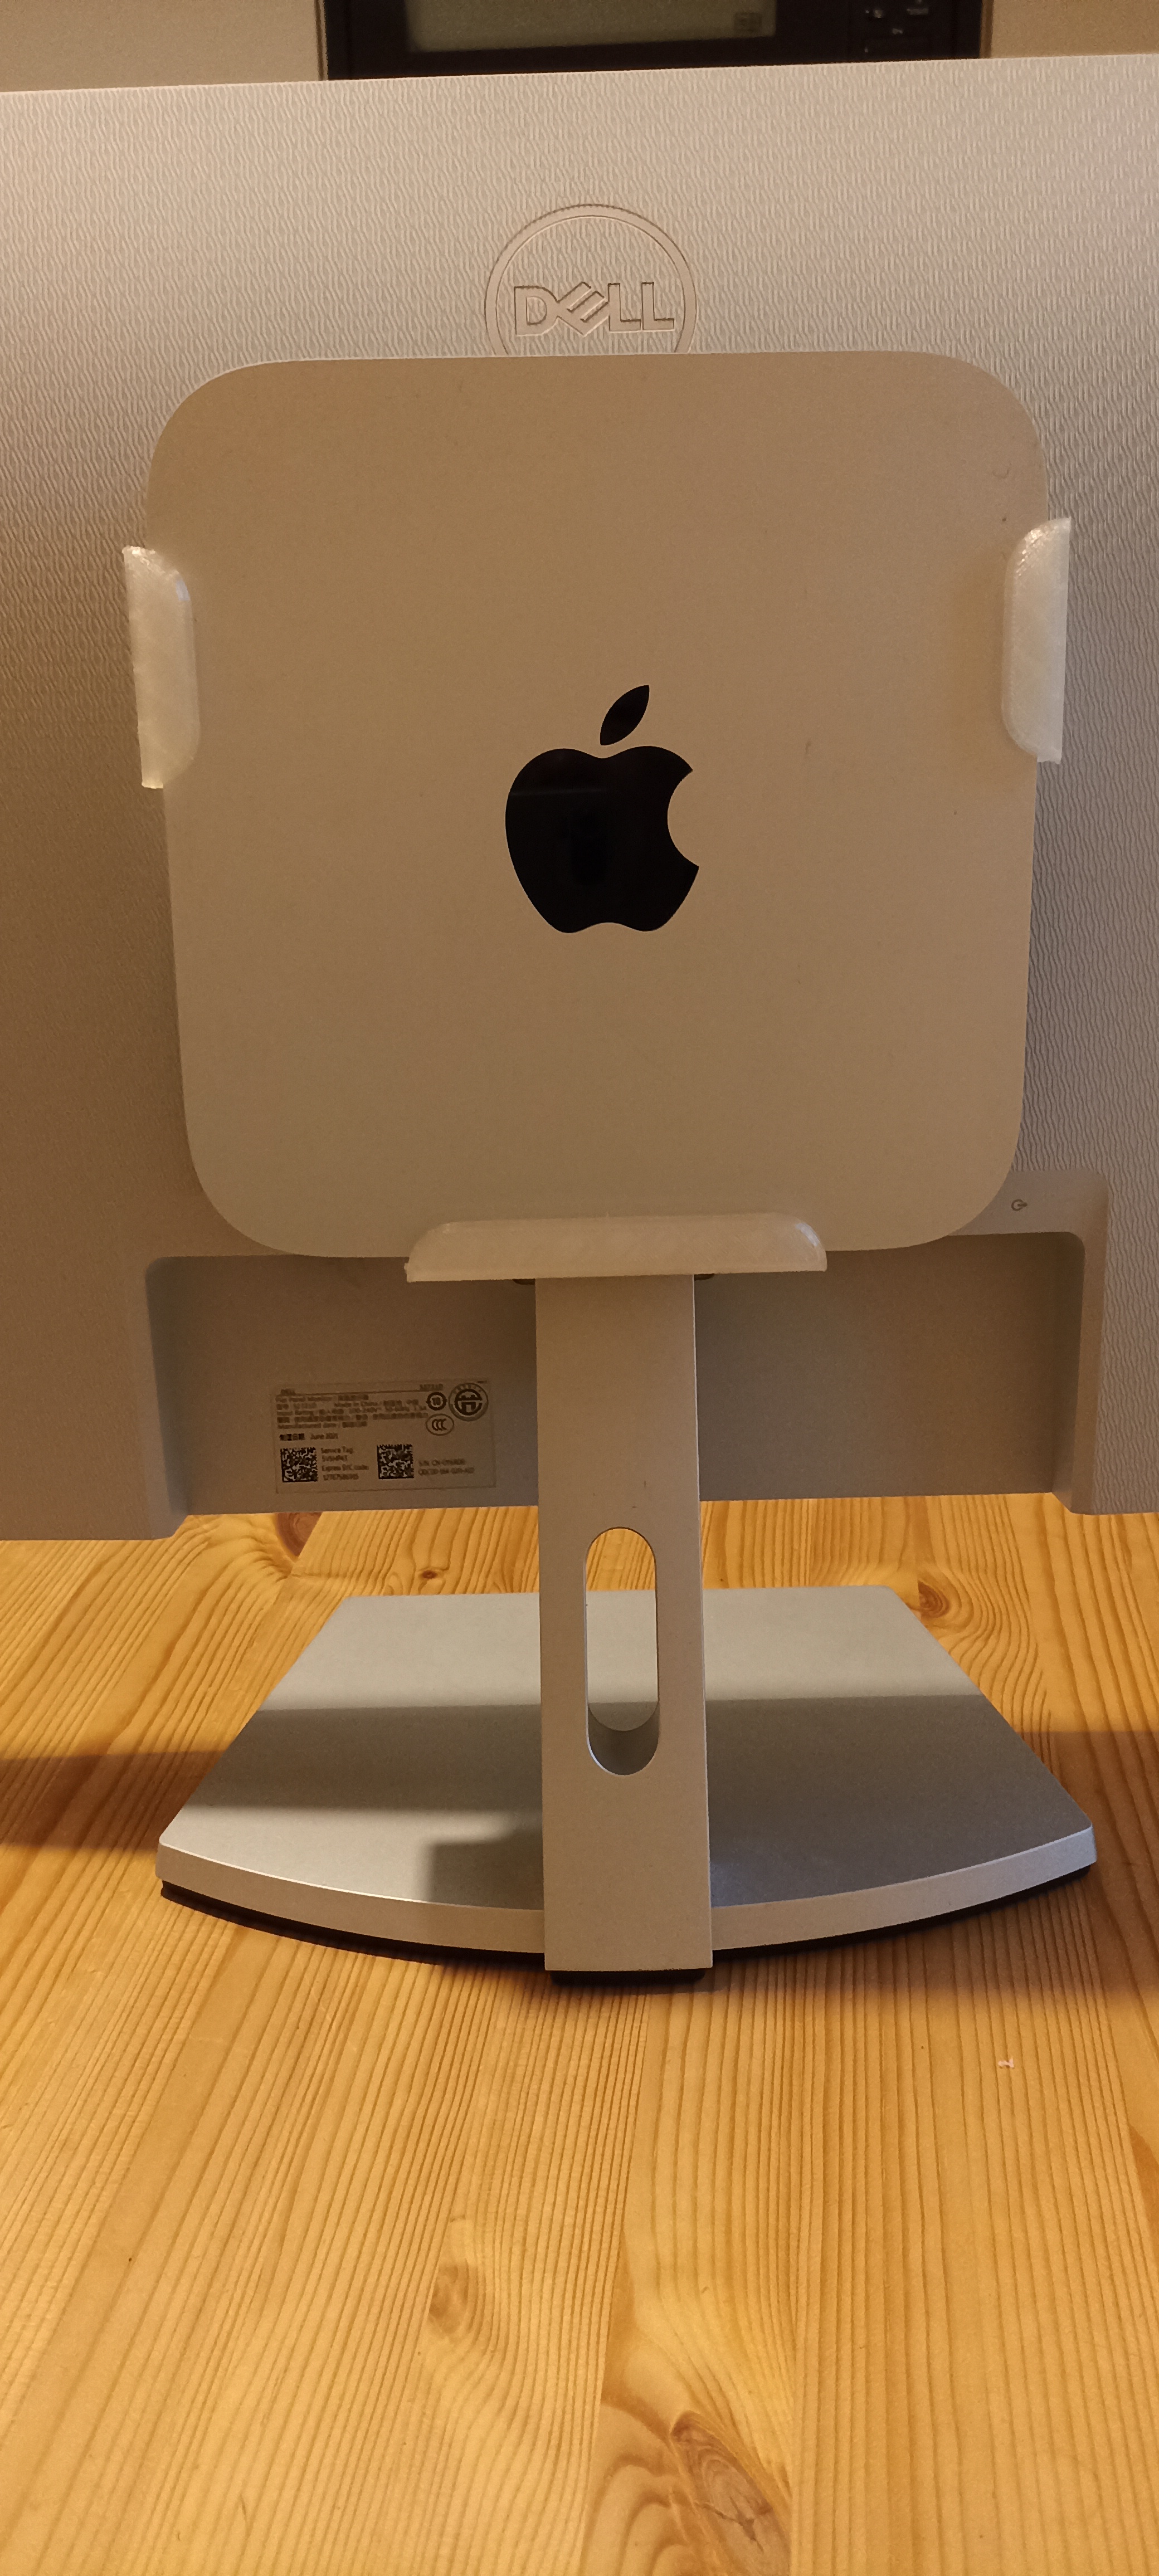 Mac Mini M1 holder for Dell Monitors